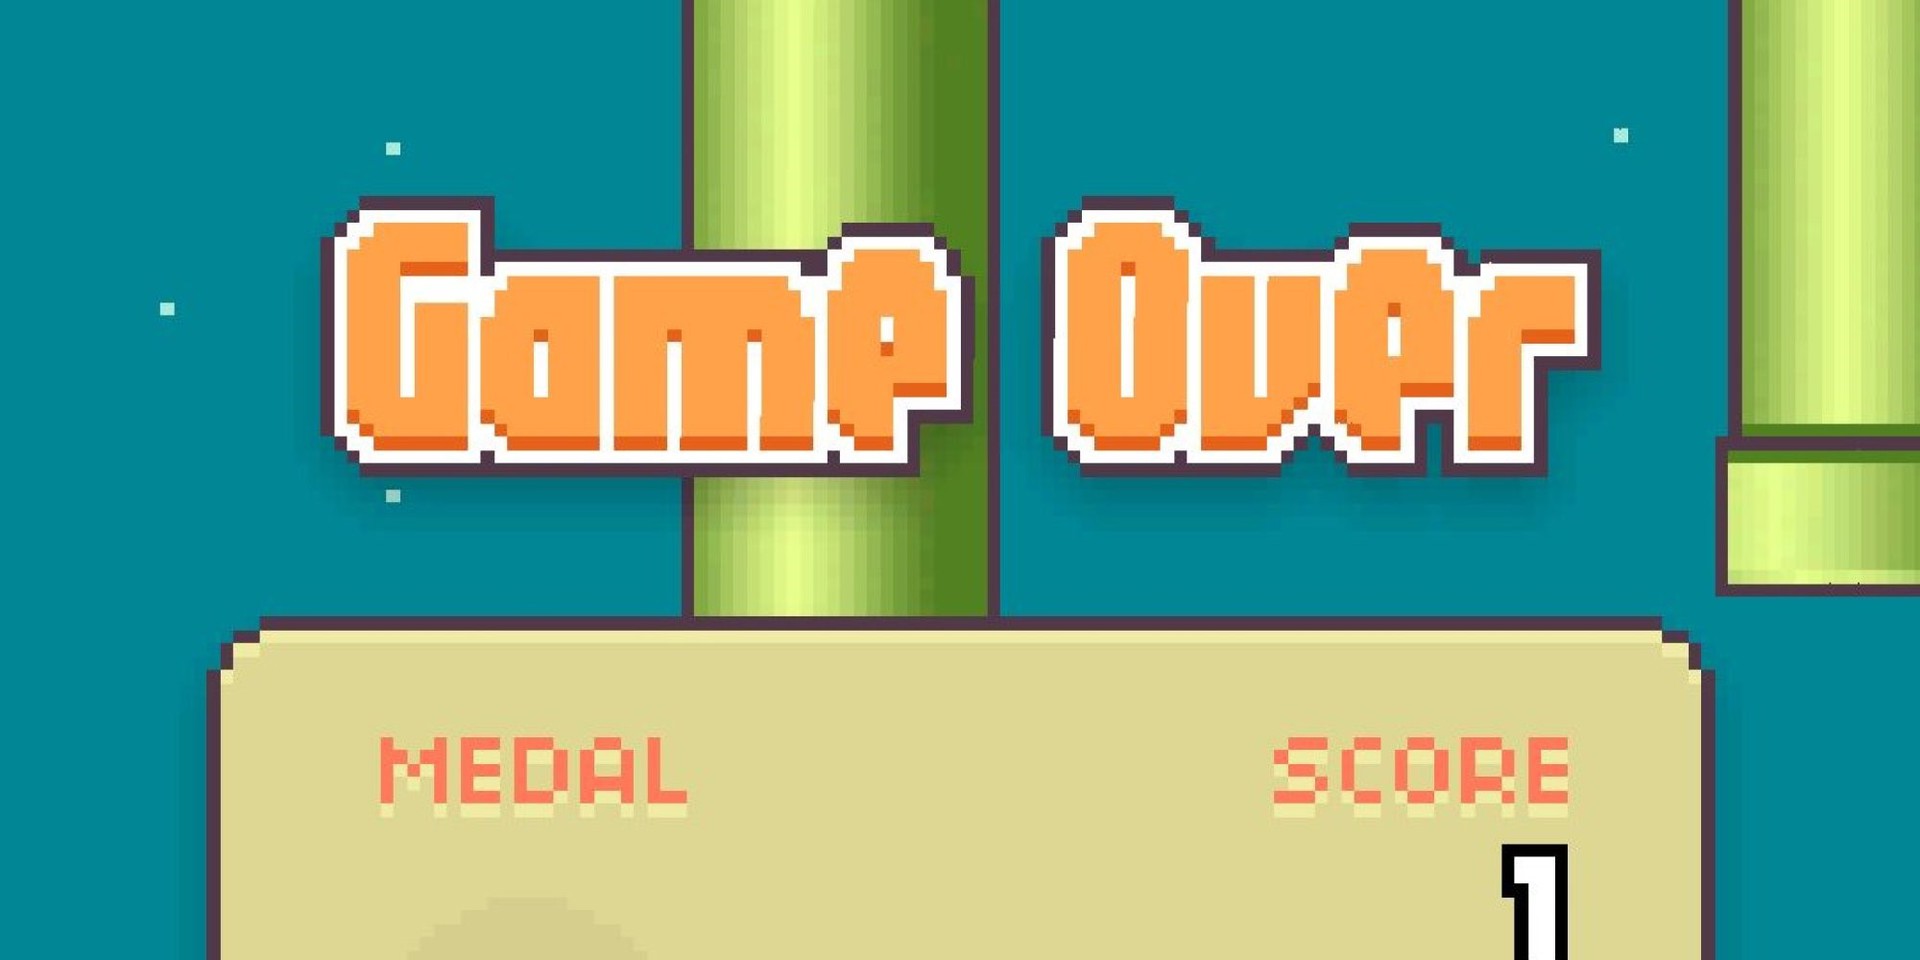 Игра Flappy Bird была удалена ради спасения жизни людей: «Live fast, die young»